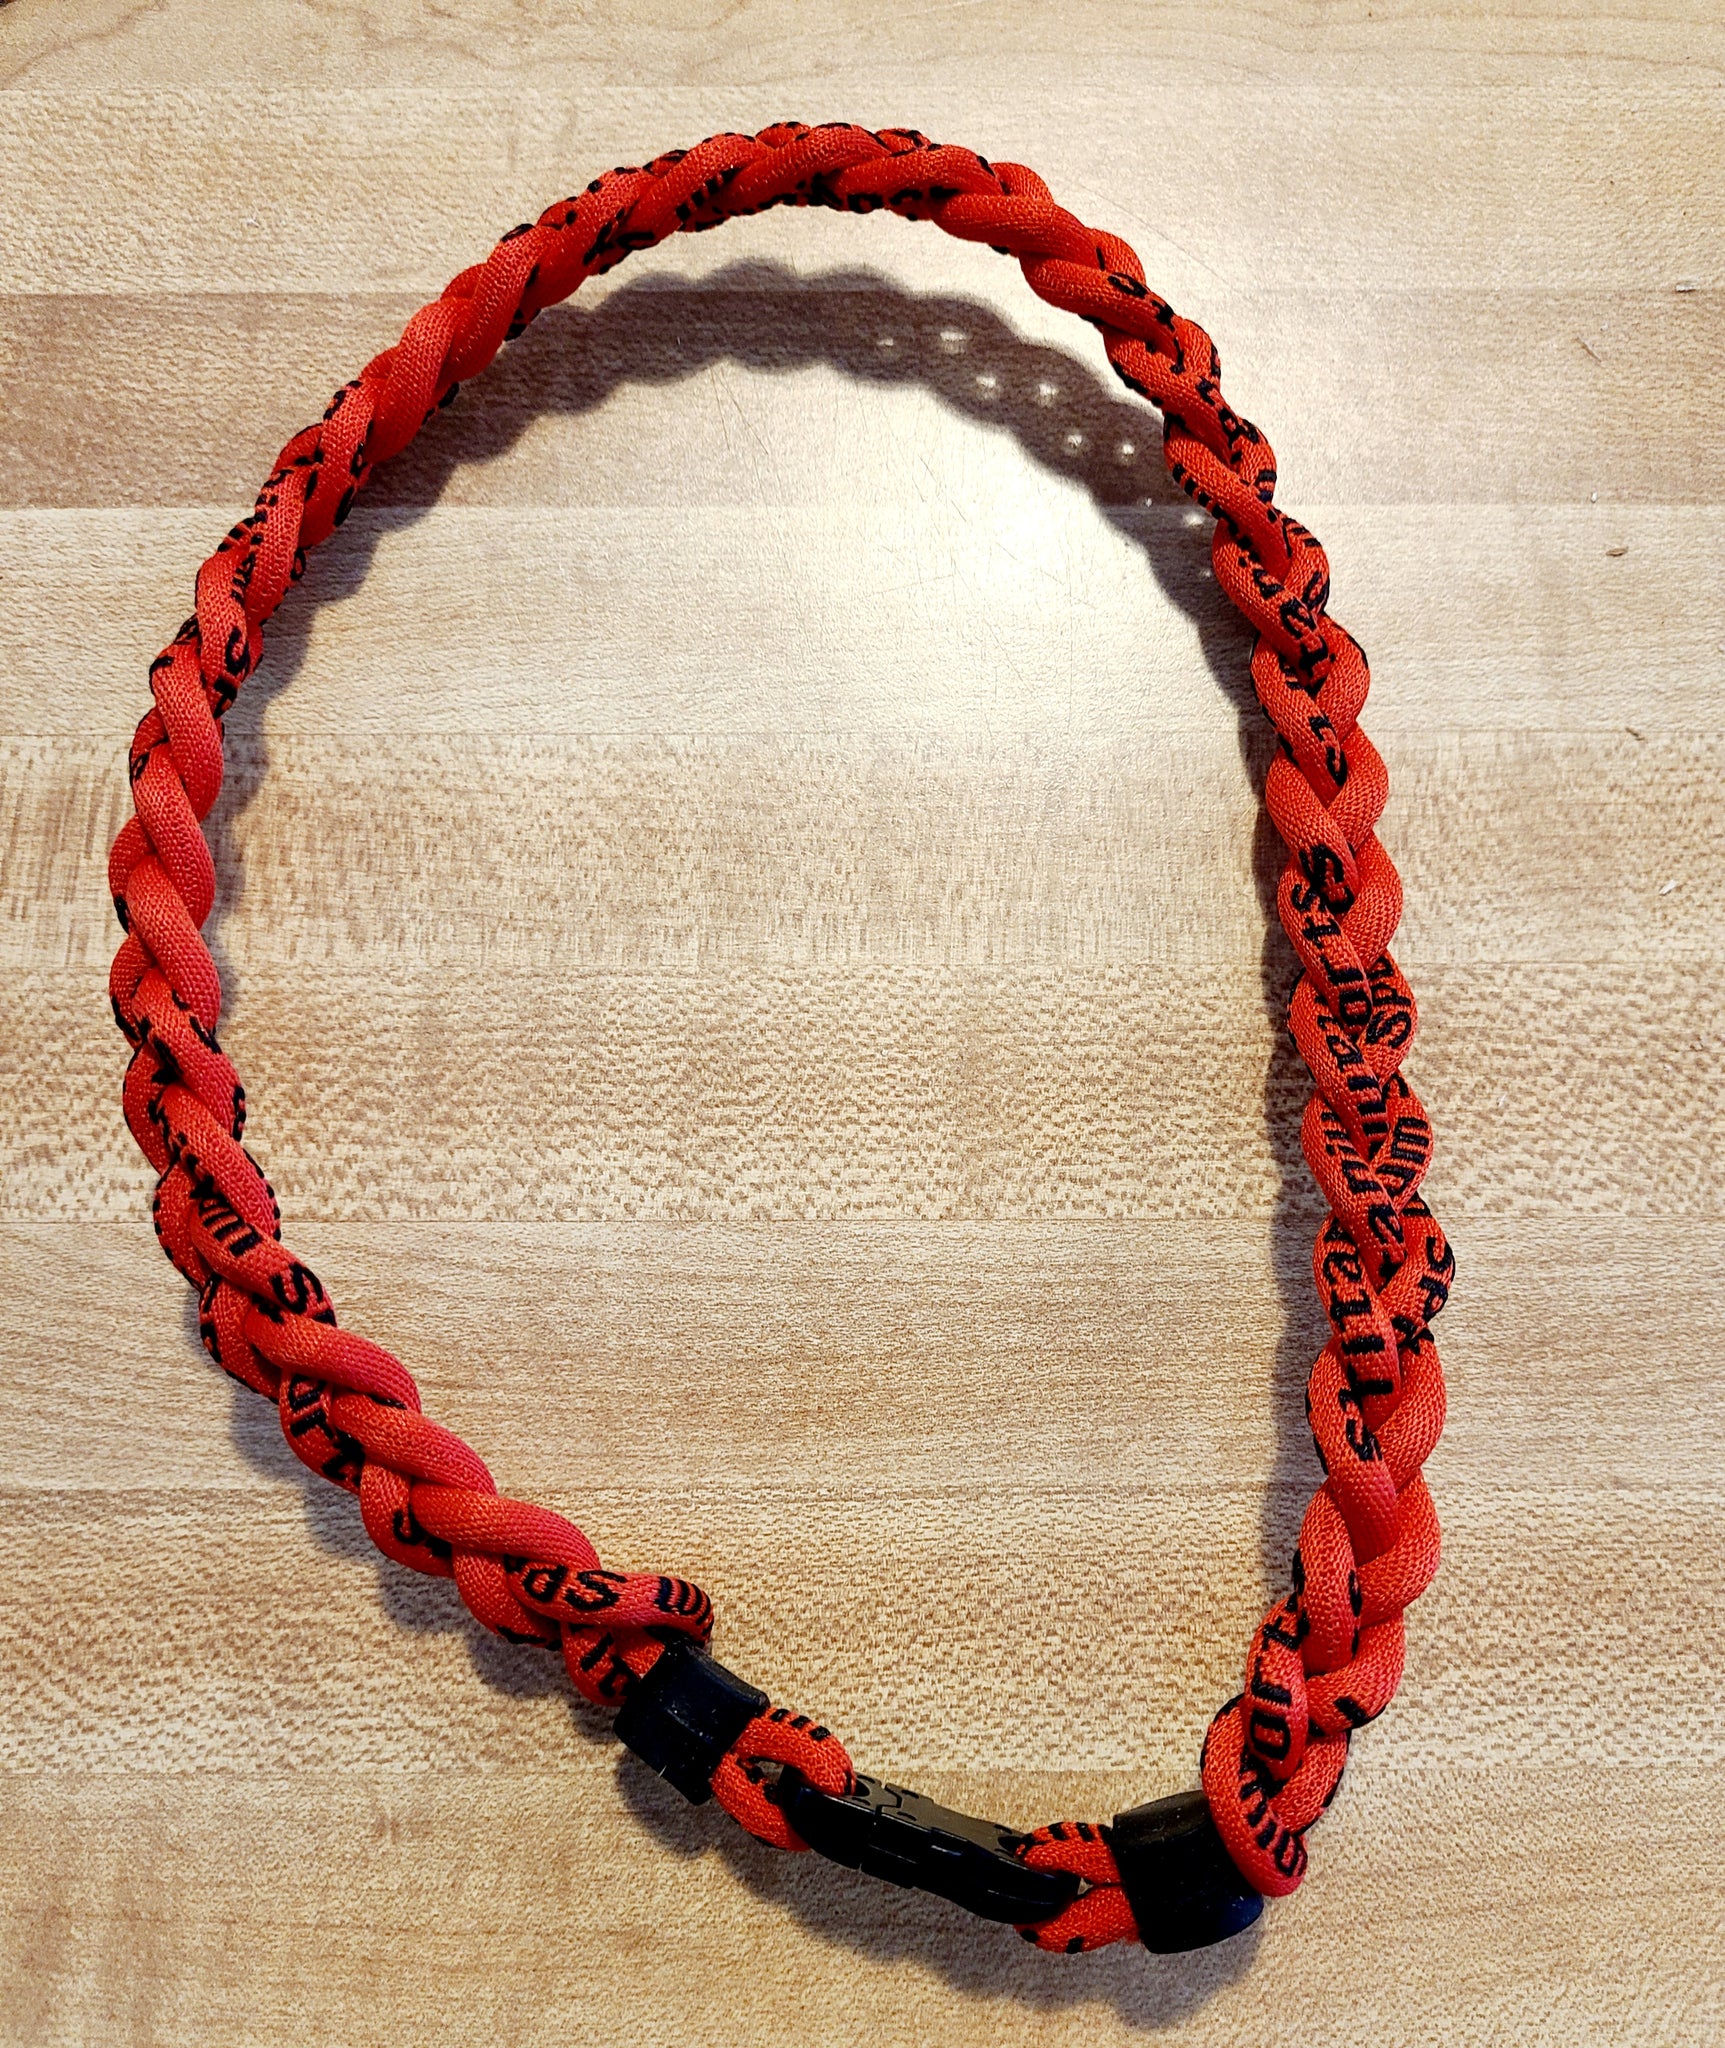 Digital Camo titanium 3 ropes necklaces titanium magnetic balance sport  custom necklace - AliExpress